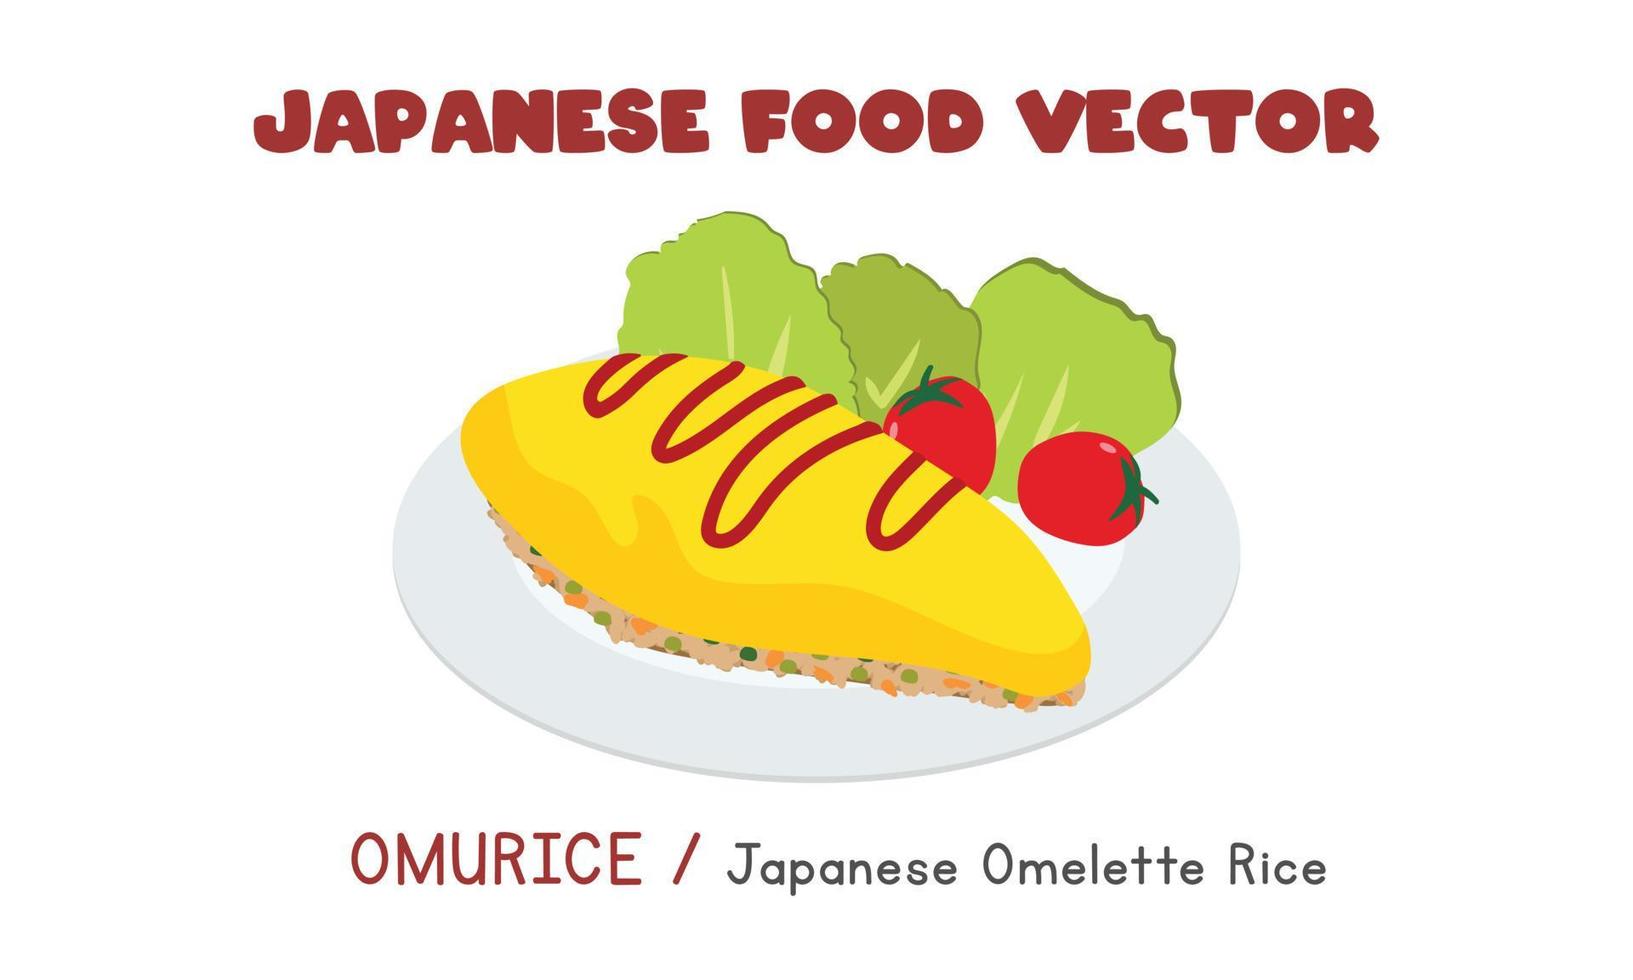 japanische omurice - flache vektordesignillustration des japanischen omelettreises, clipart-karikaturart. asiatisches Essen. japanische Küche. japanisches Essen vektor